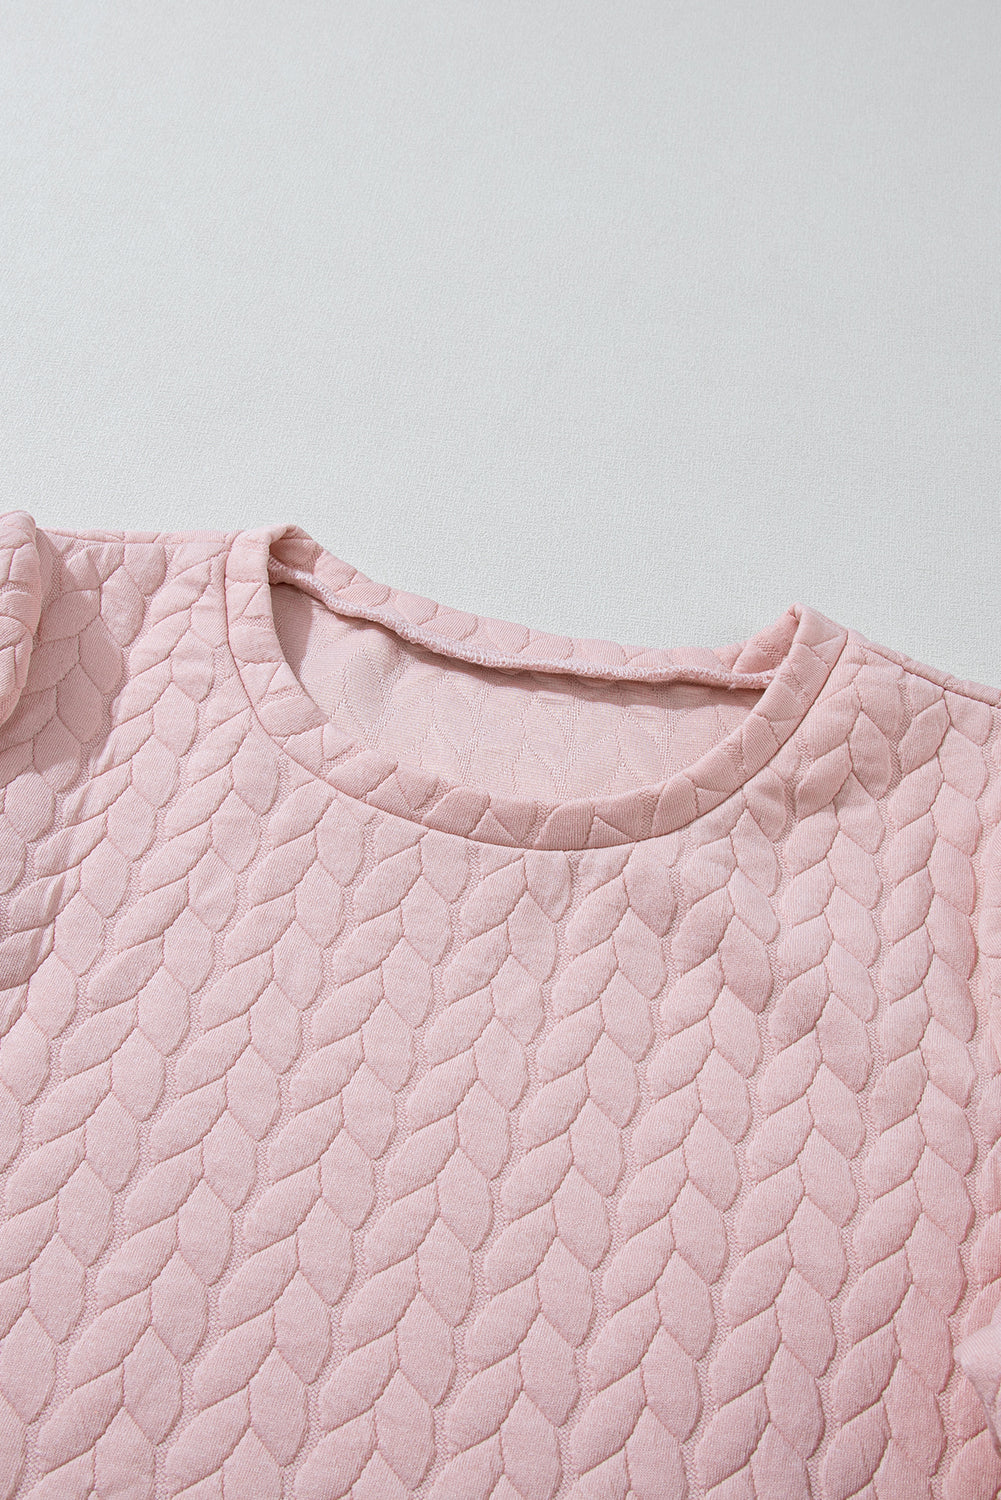 Sweat-shirt rose clair à manches bouffantes texturées et torsadées